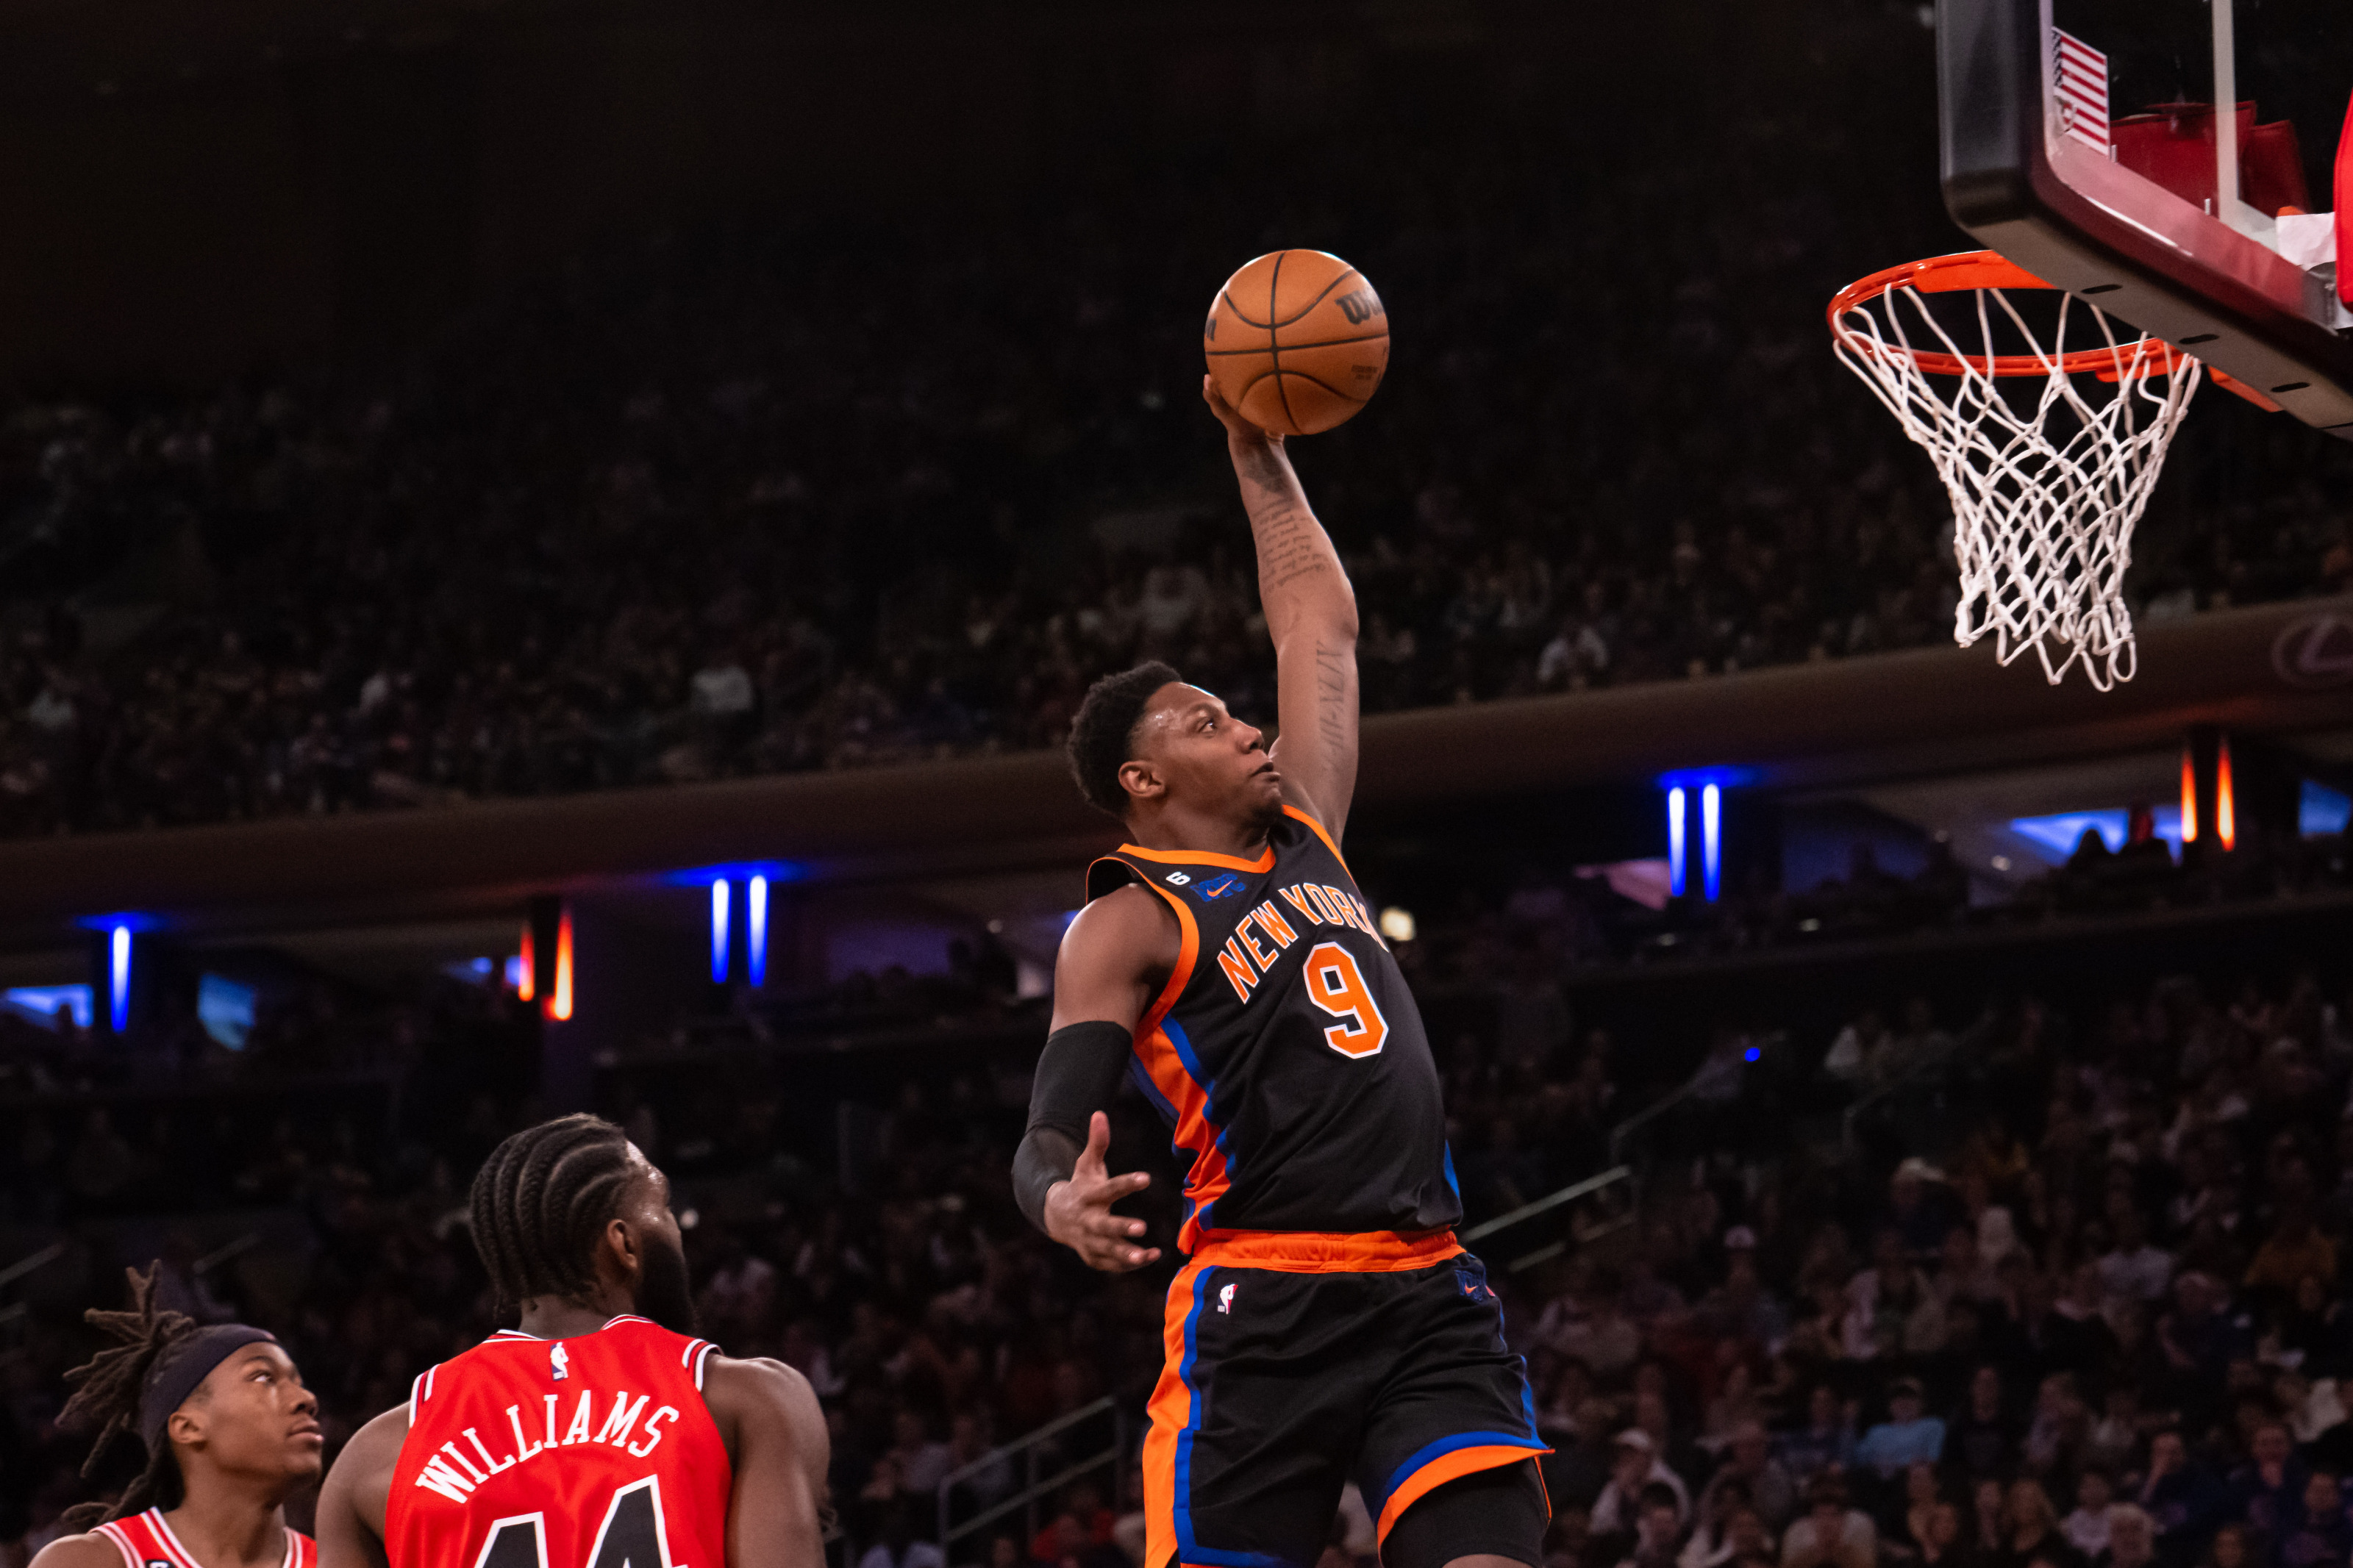 New York Basketball on X: RJ Barrett on IG